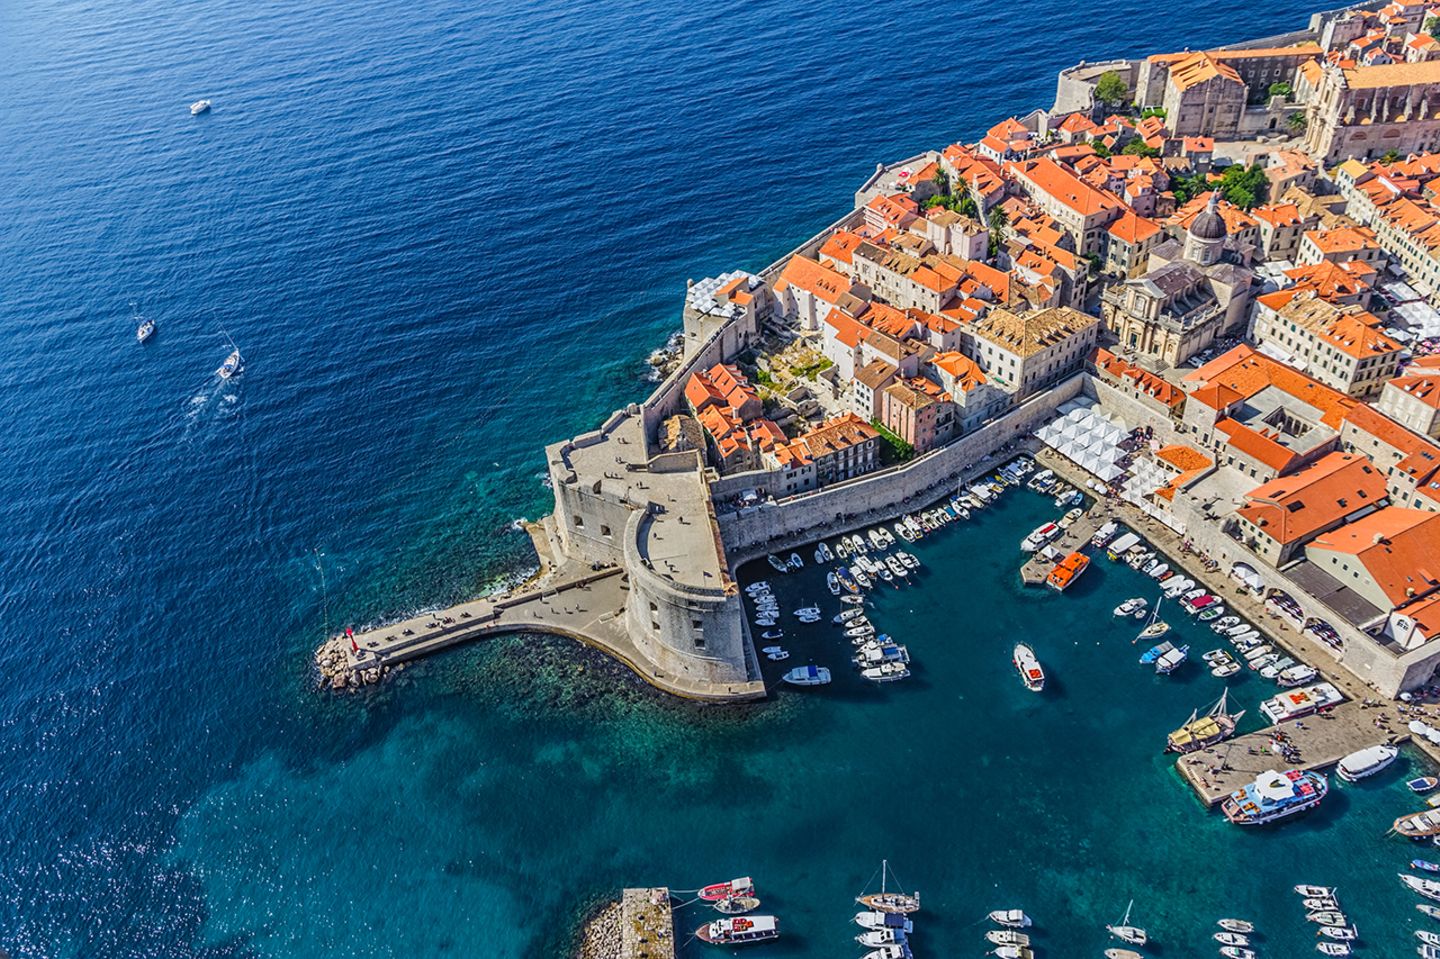 Stadthafen von Dubrovnik